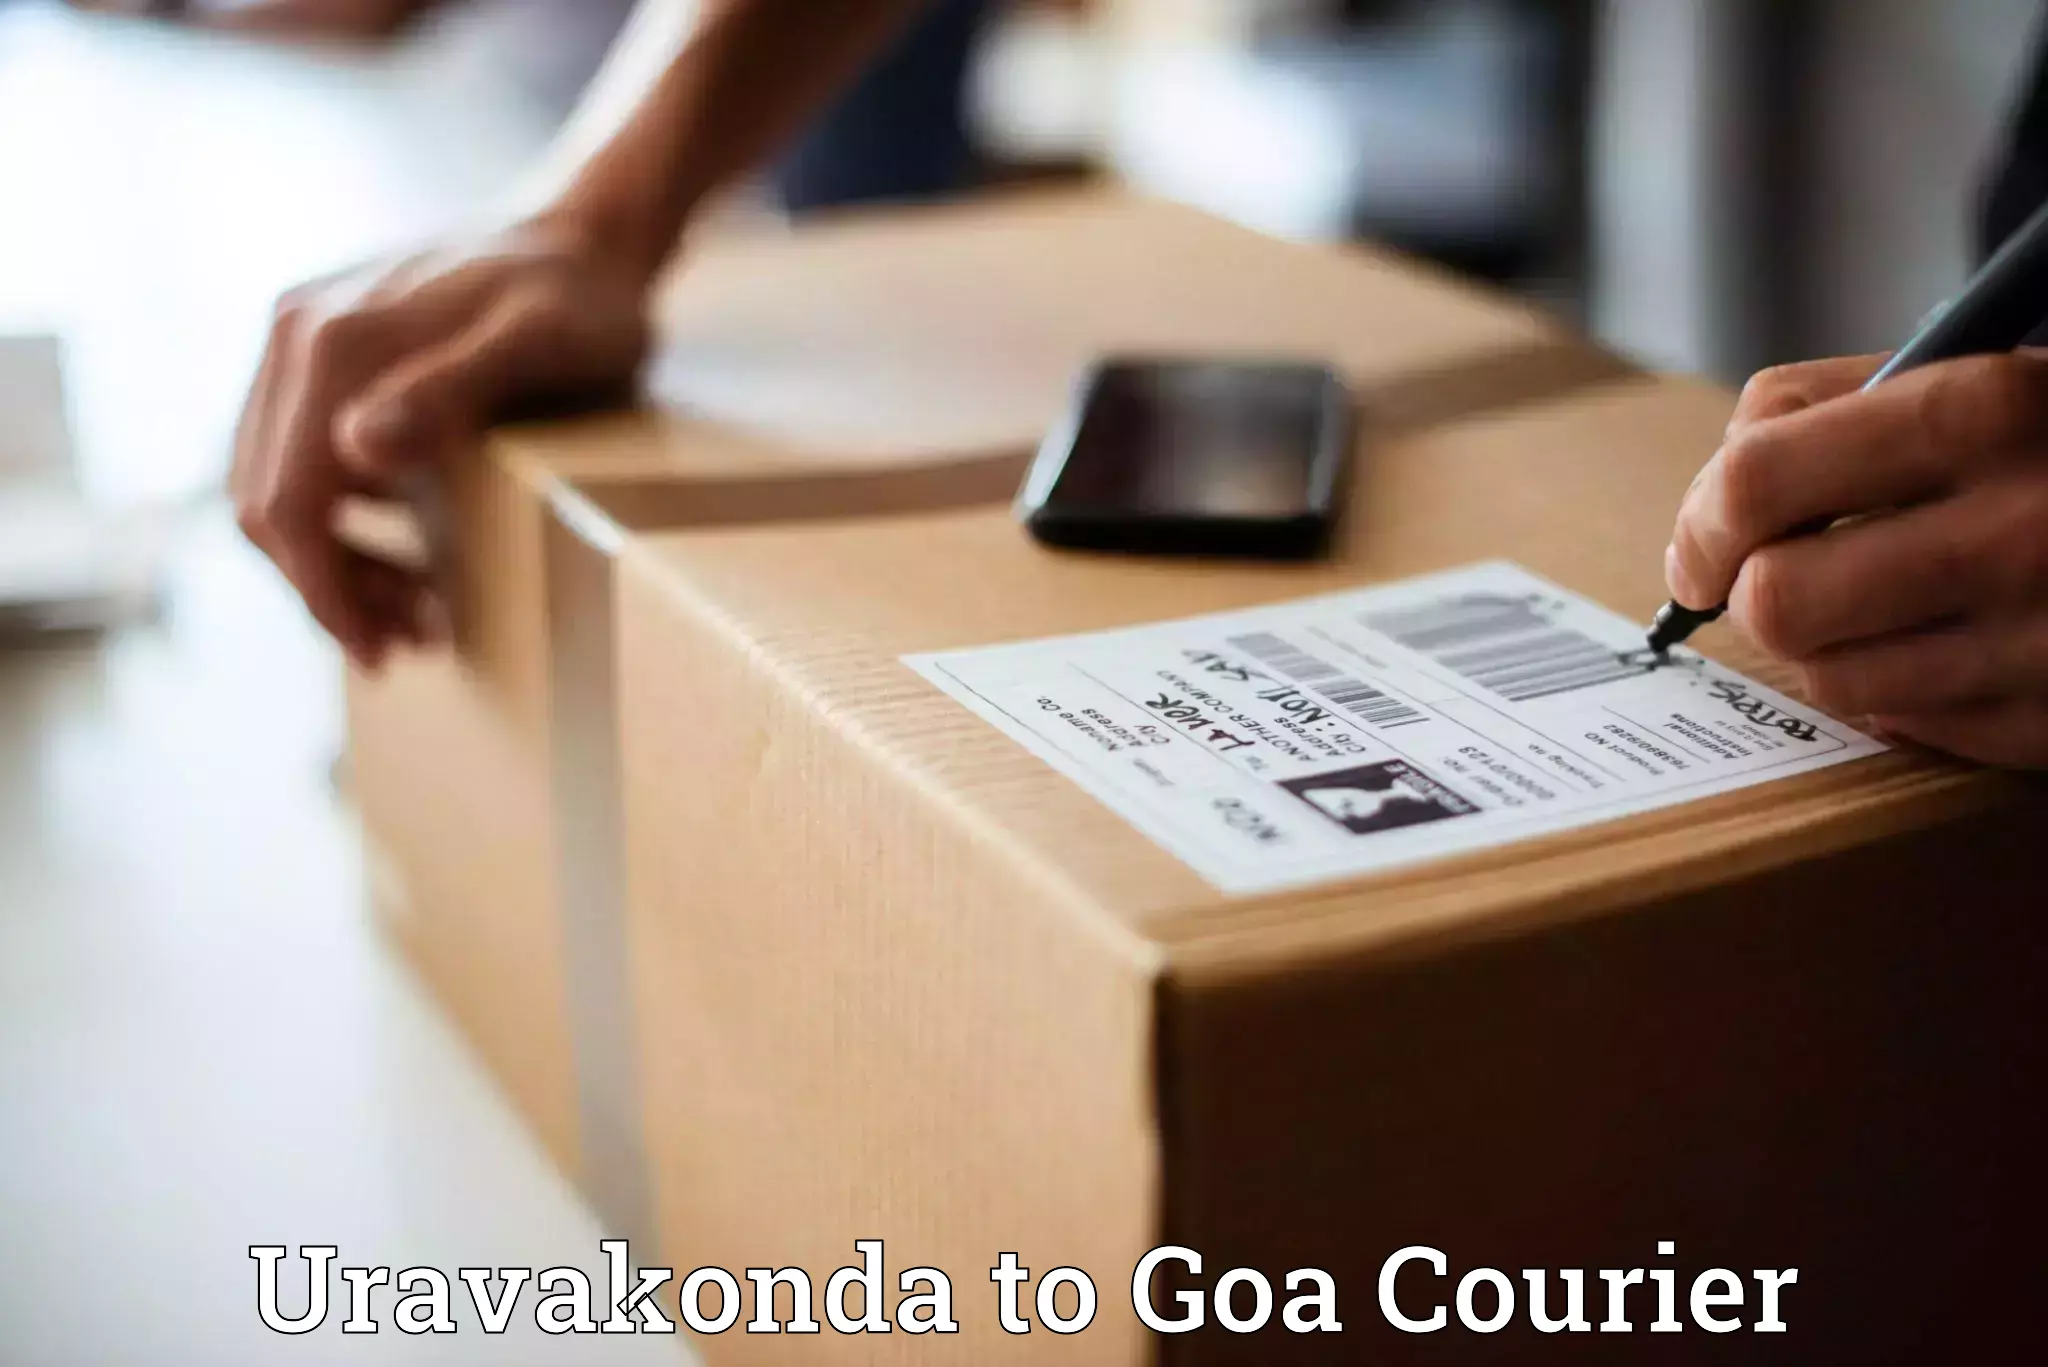 Advanced delivery network Uravakonda to Ponda